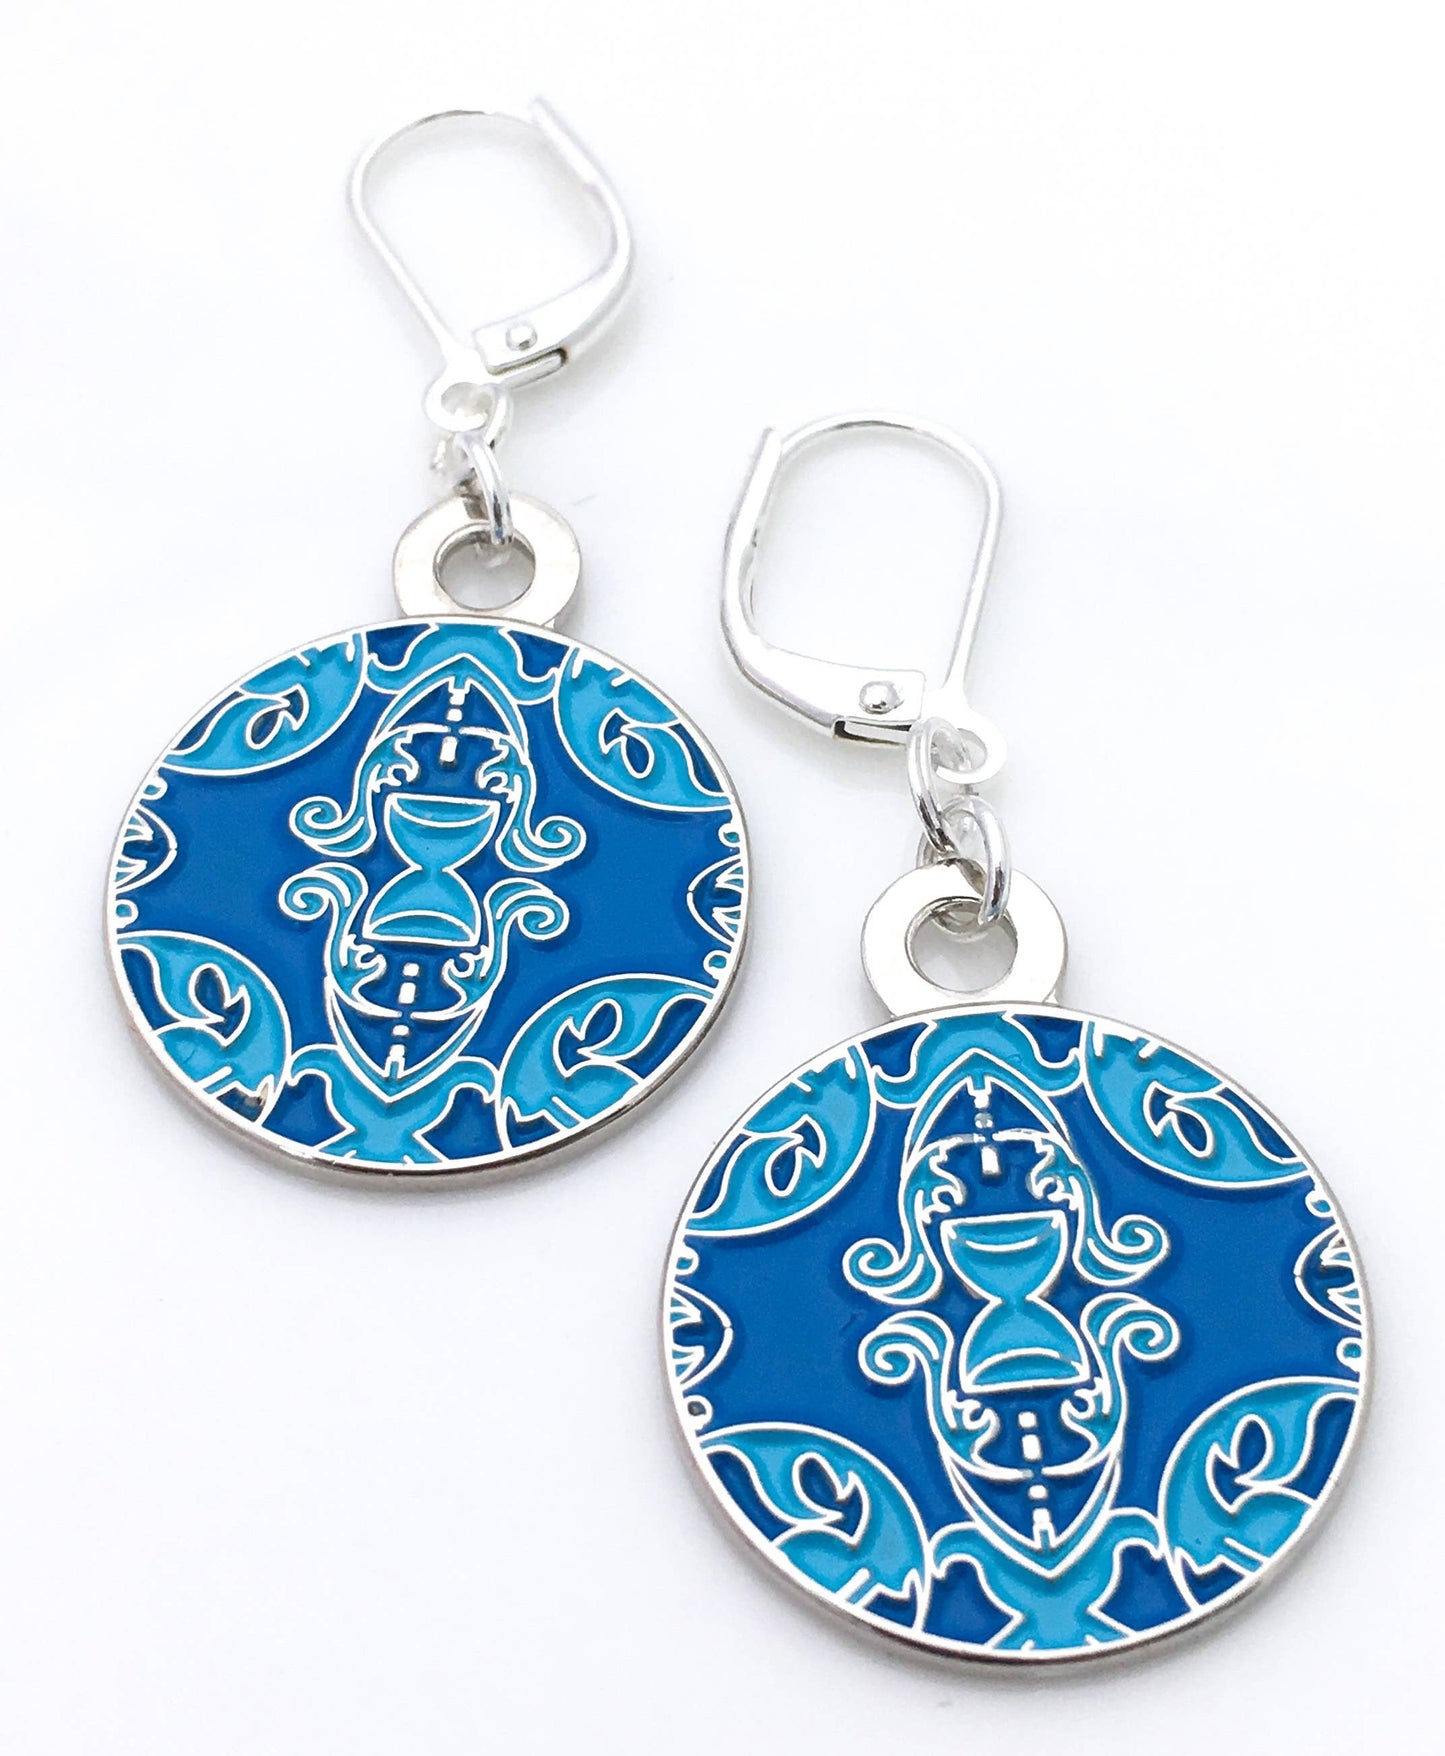 Ornate round enamel earrings in blue